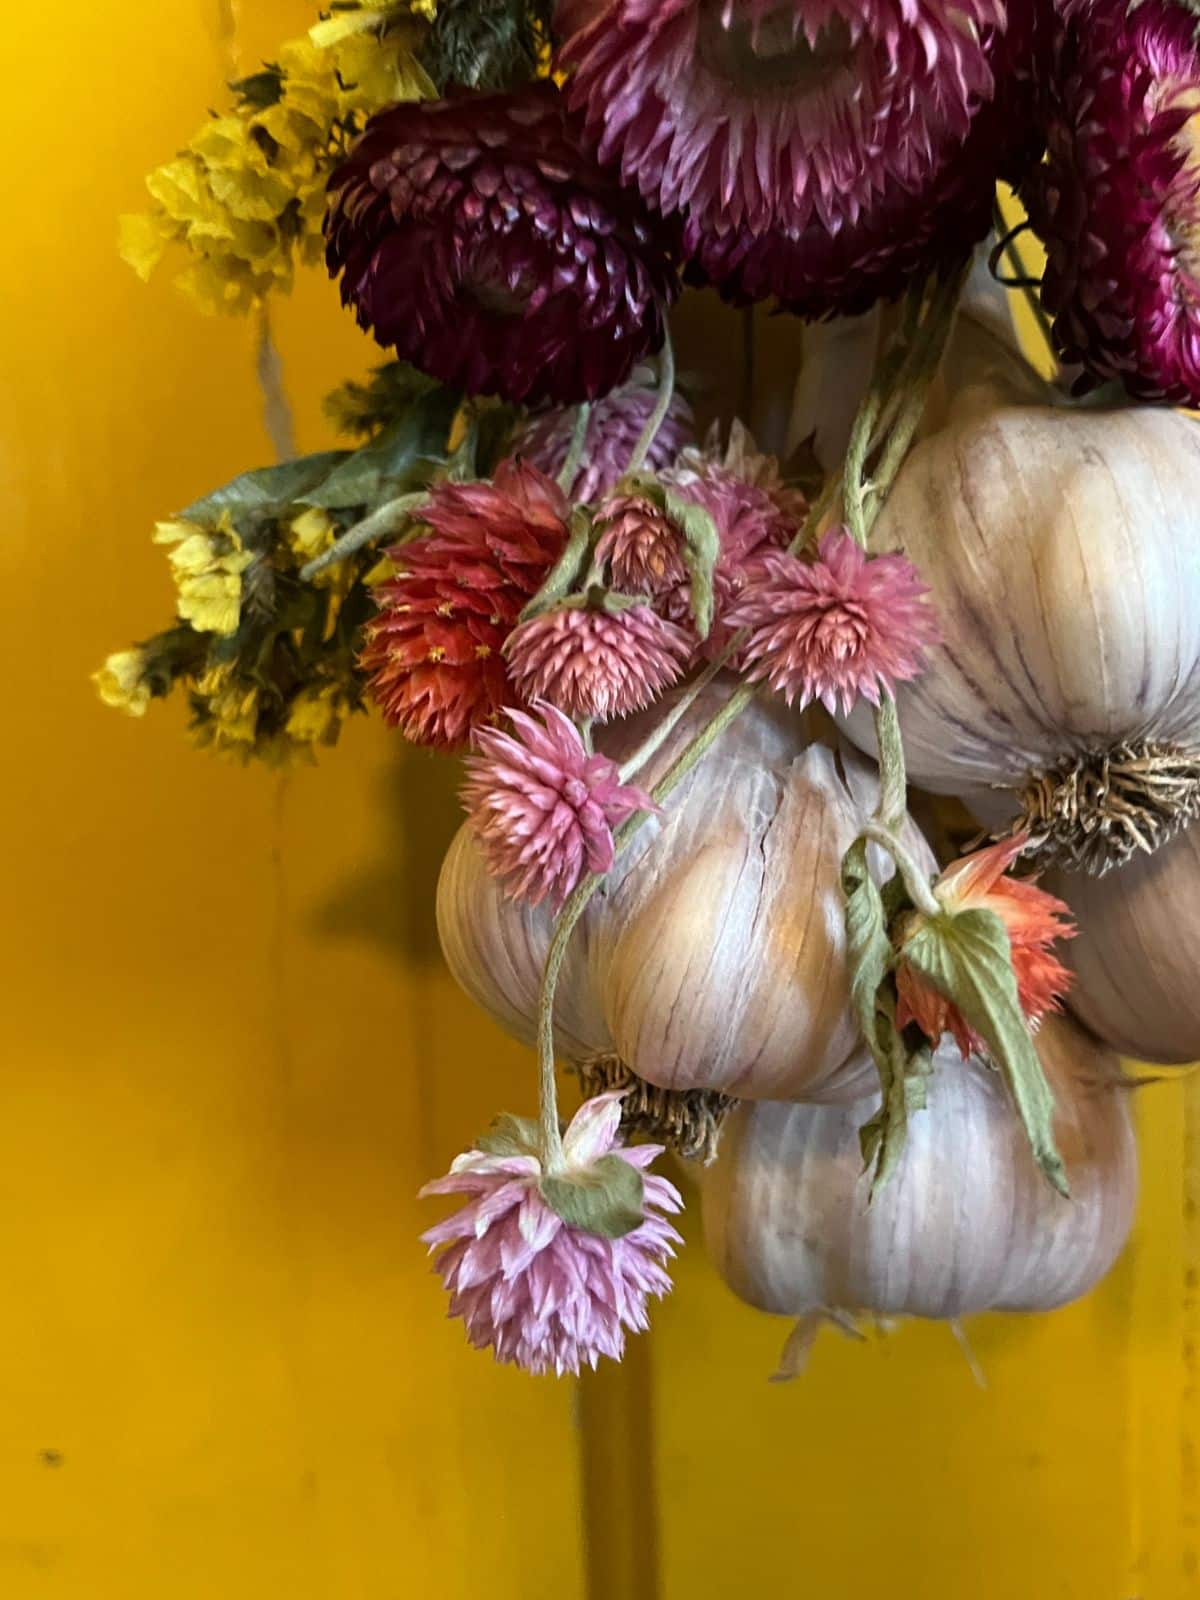 Closeup view of a decorative hanging garlic bundle